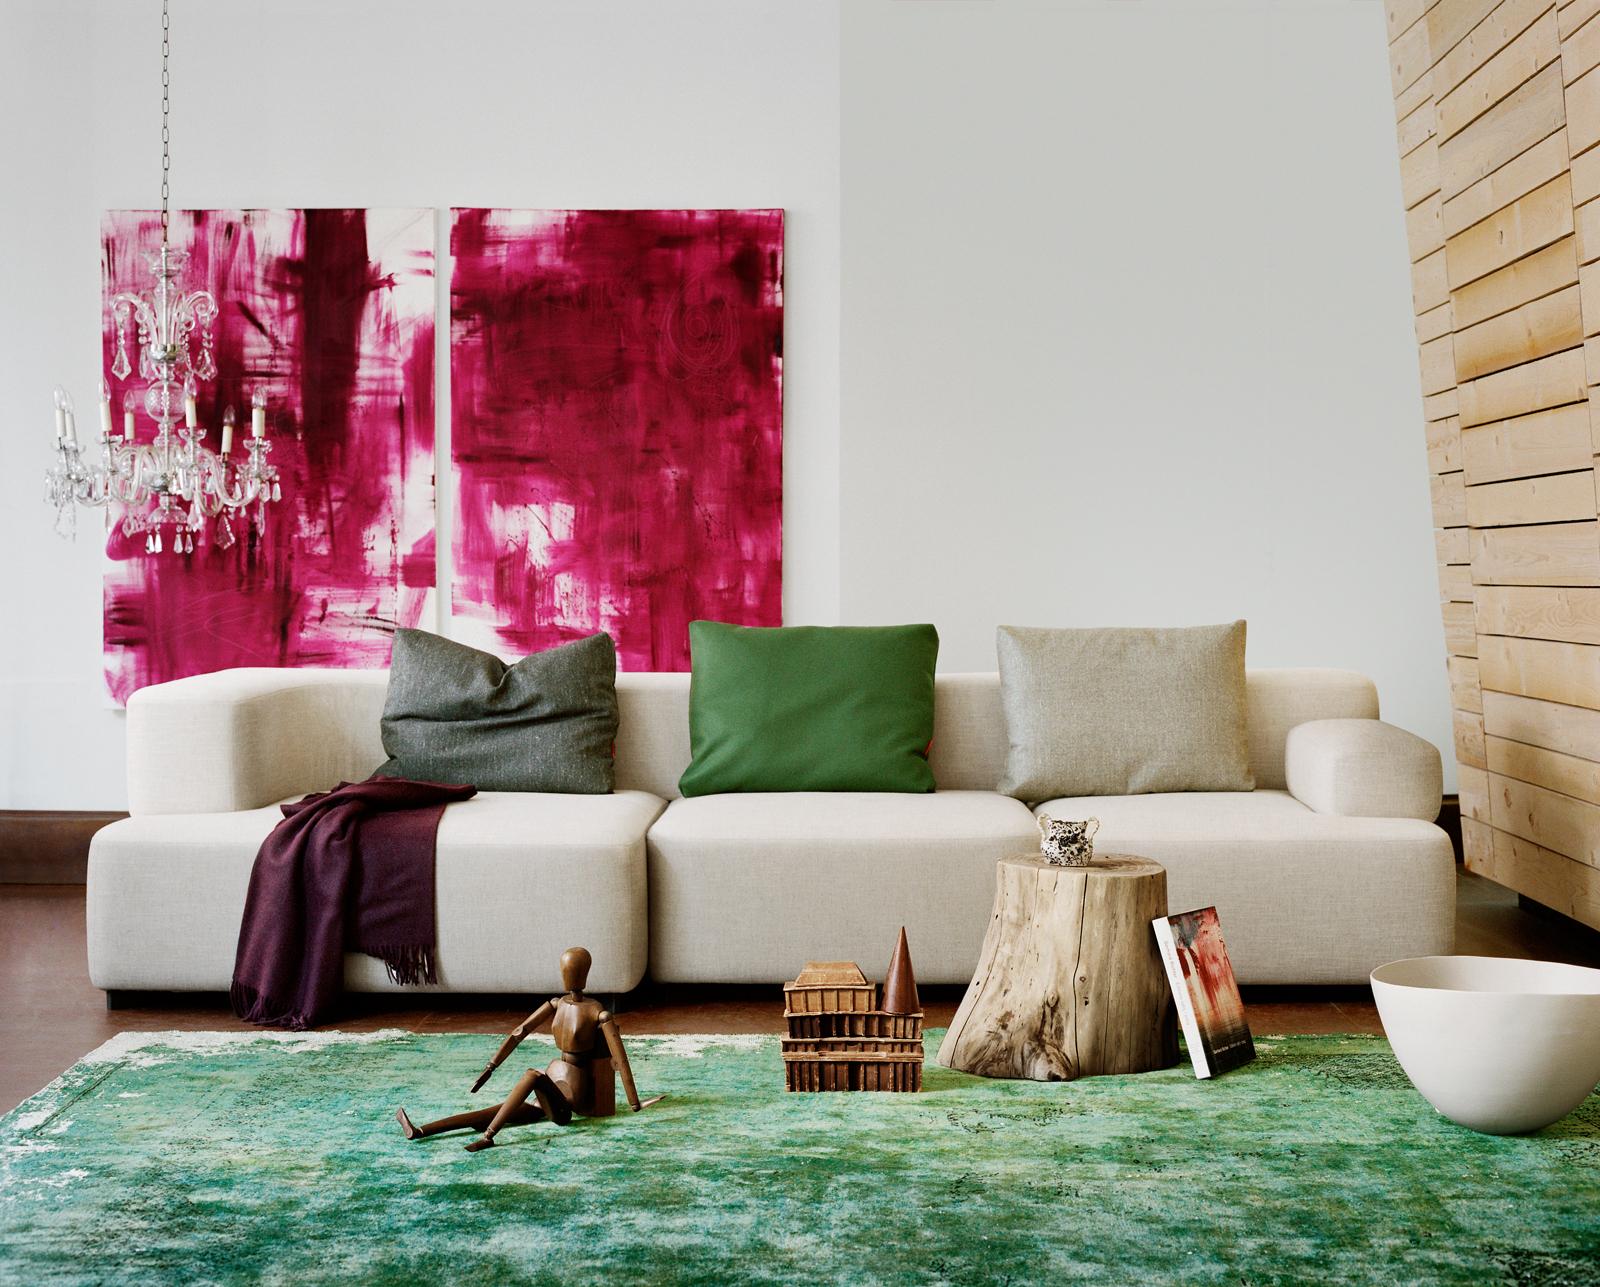 Cremefarbene Couch und grüner Teppich gepaart mit pinkfarbenem Leinwandbild #sofakissen #sofa ©Fritz Hansen/Ditte Isager